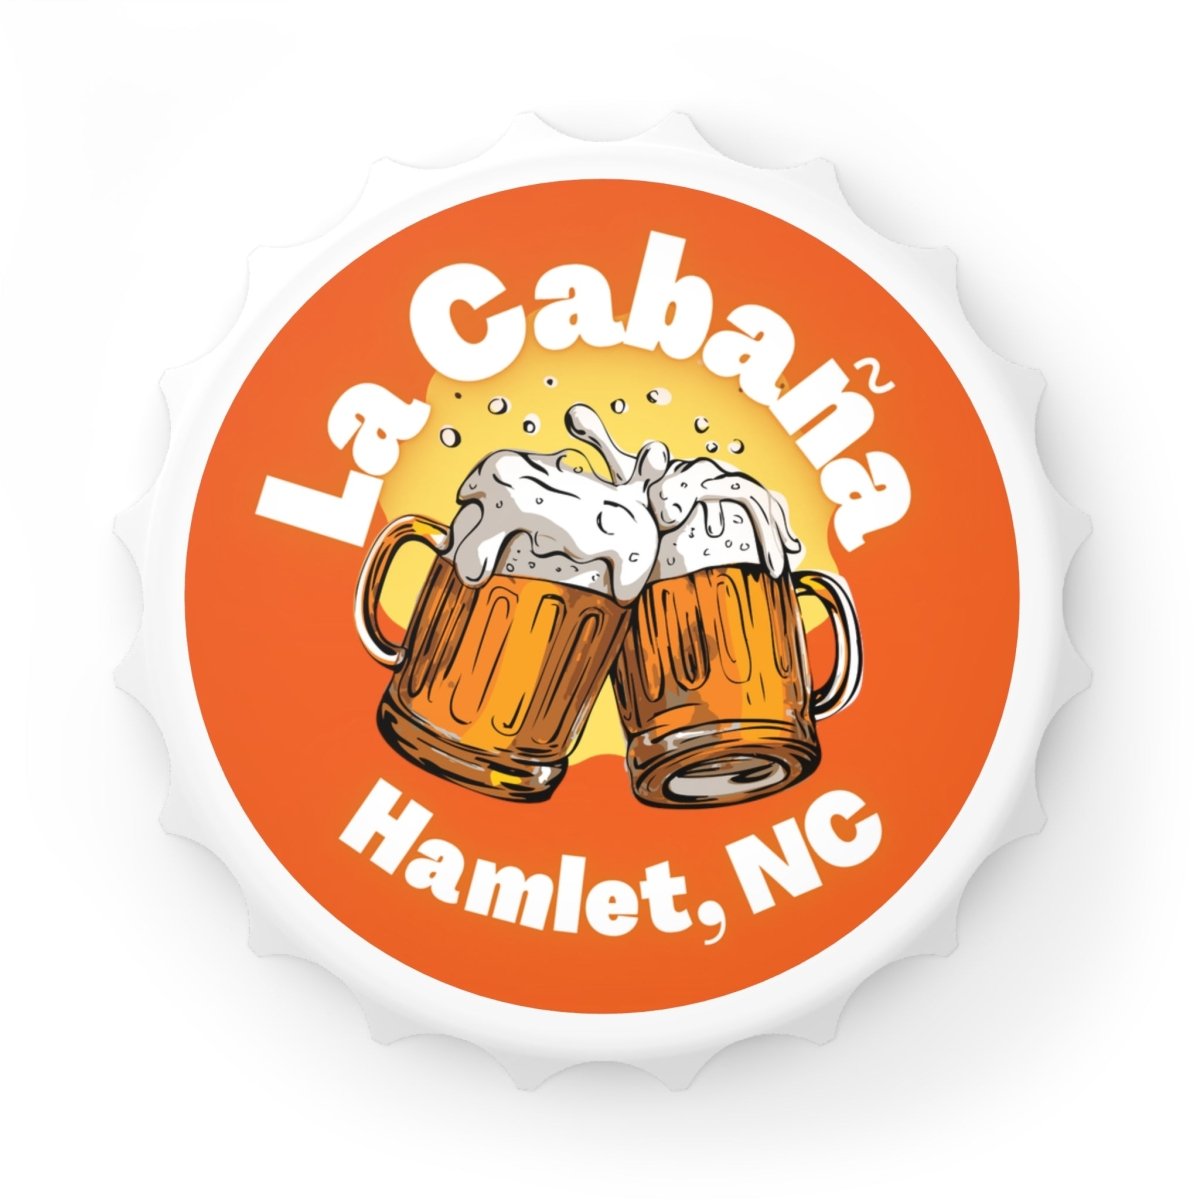 Bottle Opener - La Cabana, Hamlet, NC - #variant_color# - #variant_size# - #variant_option#